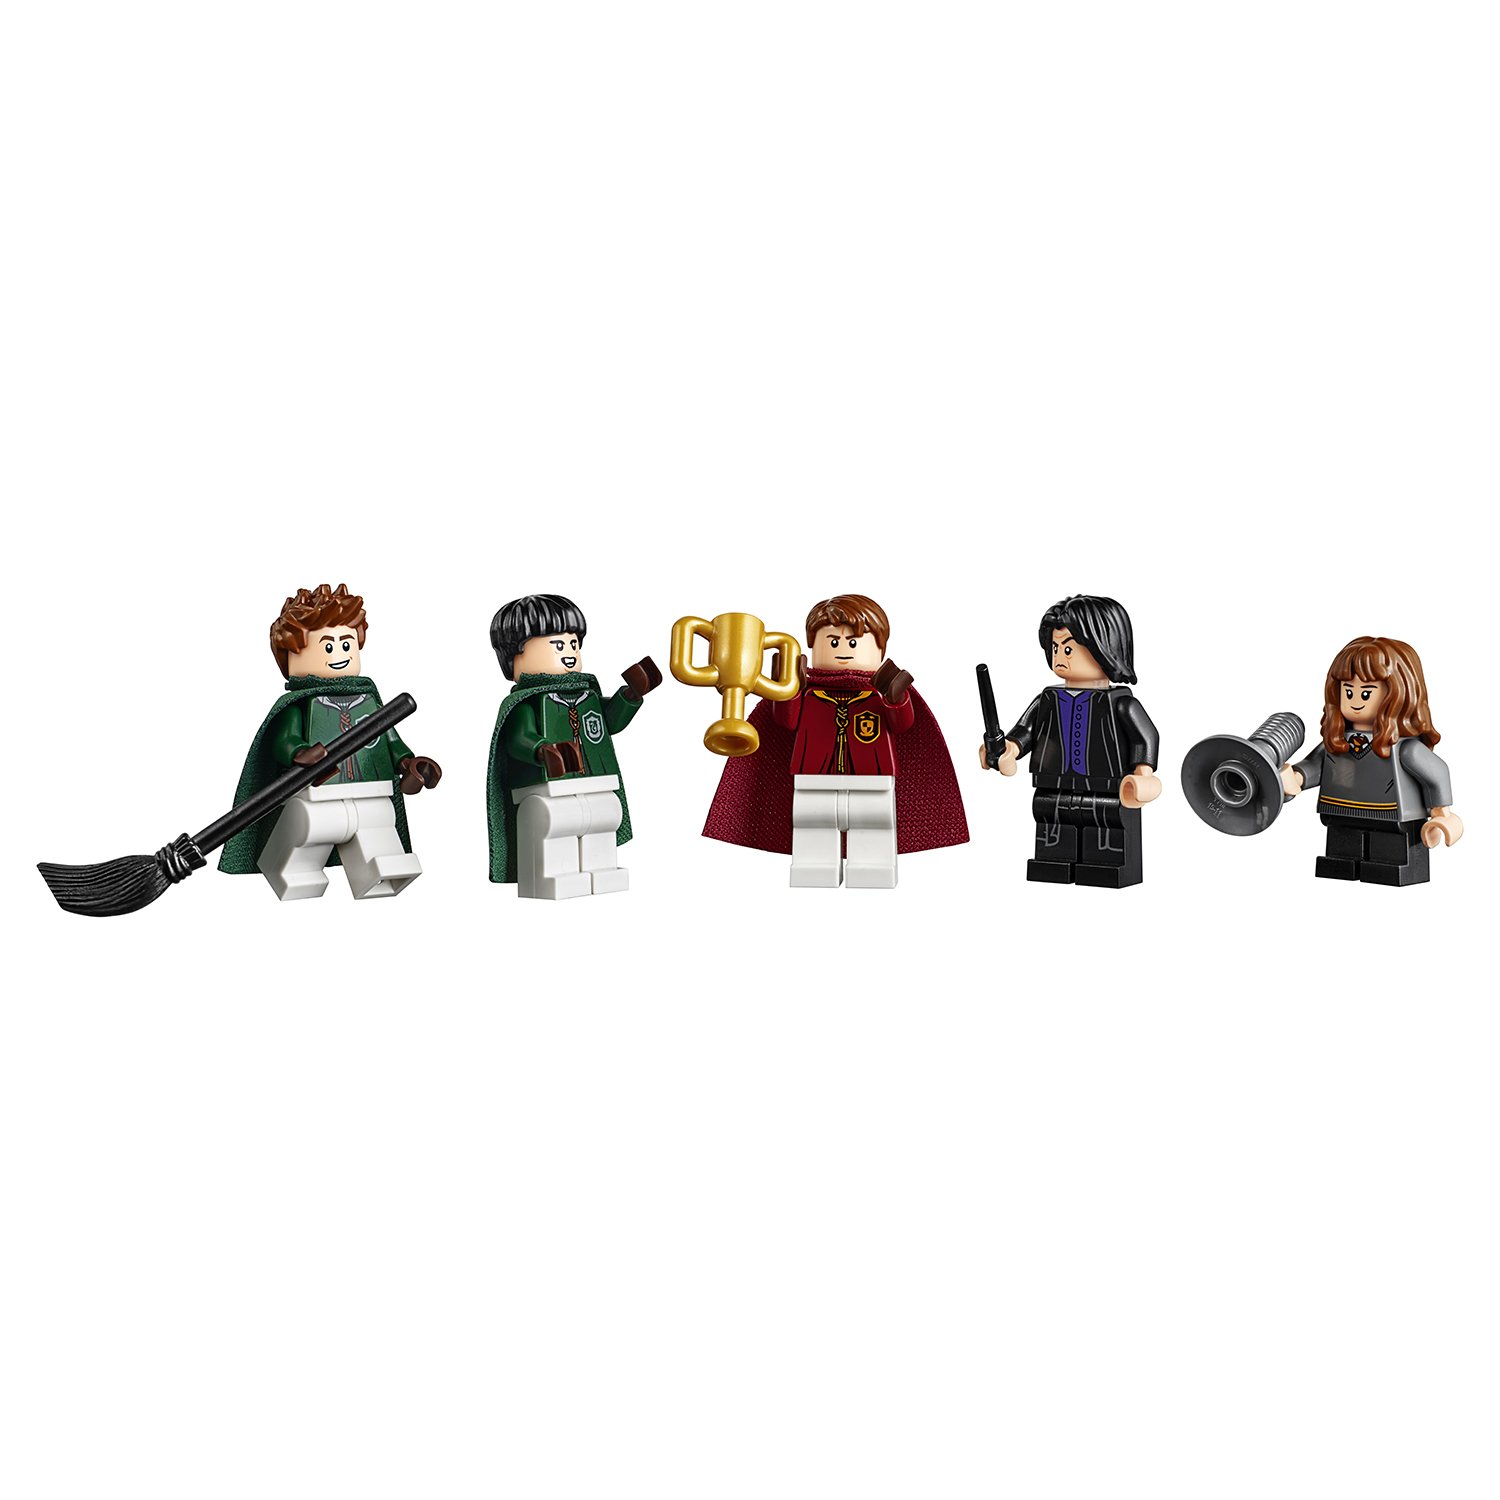 Конструктор LEGO Harry Potter «Матч по квиддичу» 75956, 500 деталей